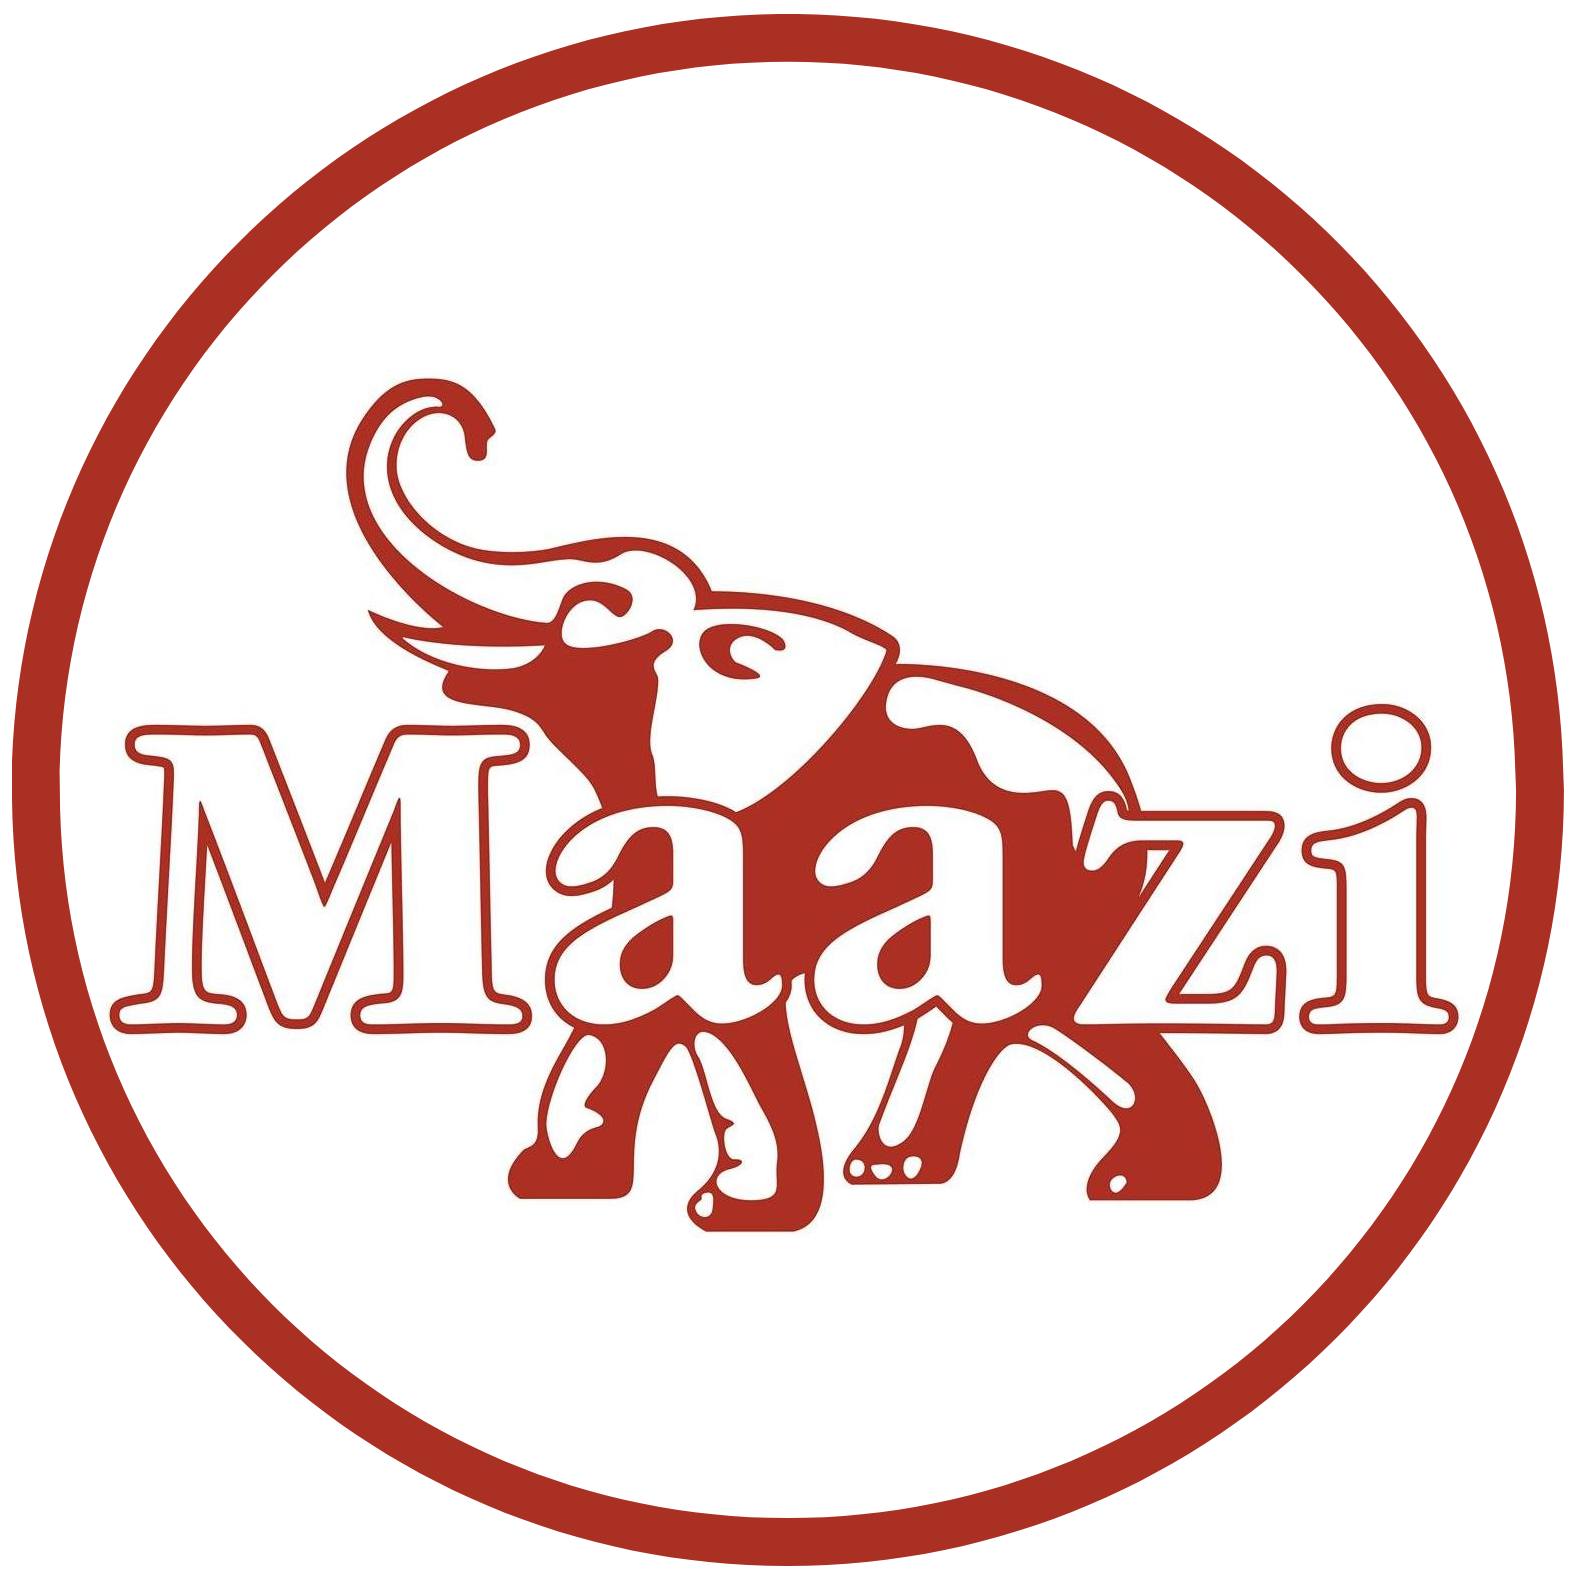 Maazi Hathersage